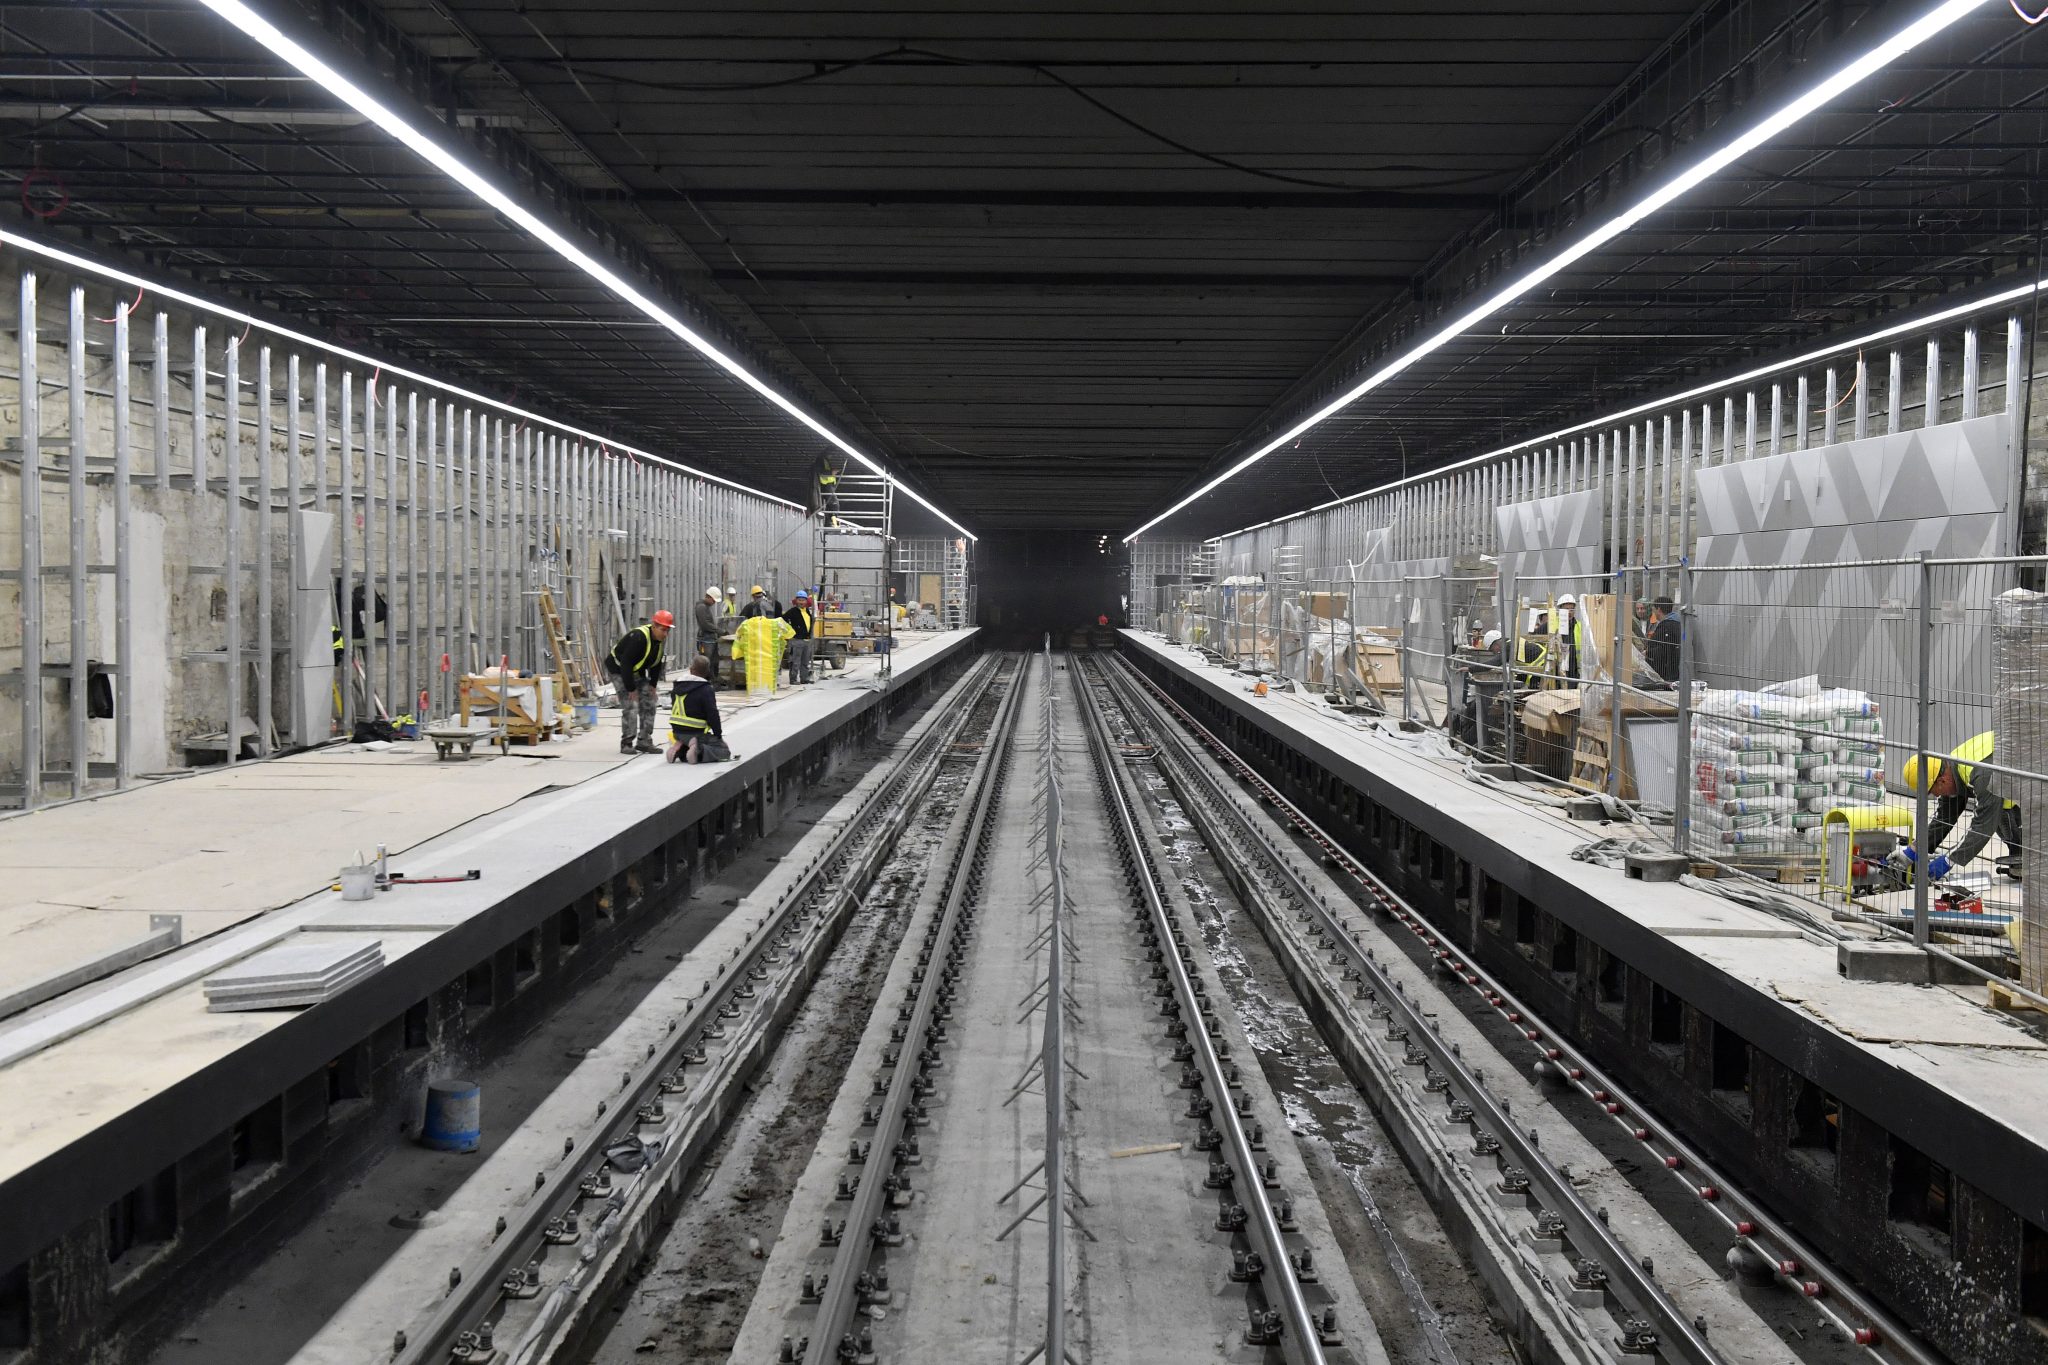 Umbau des Hauptabschnitts der Budapester U-Bahnlinie 3 wird fortgesetzt